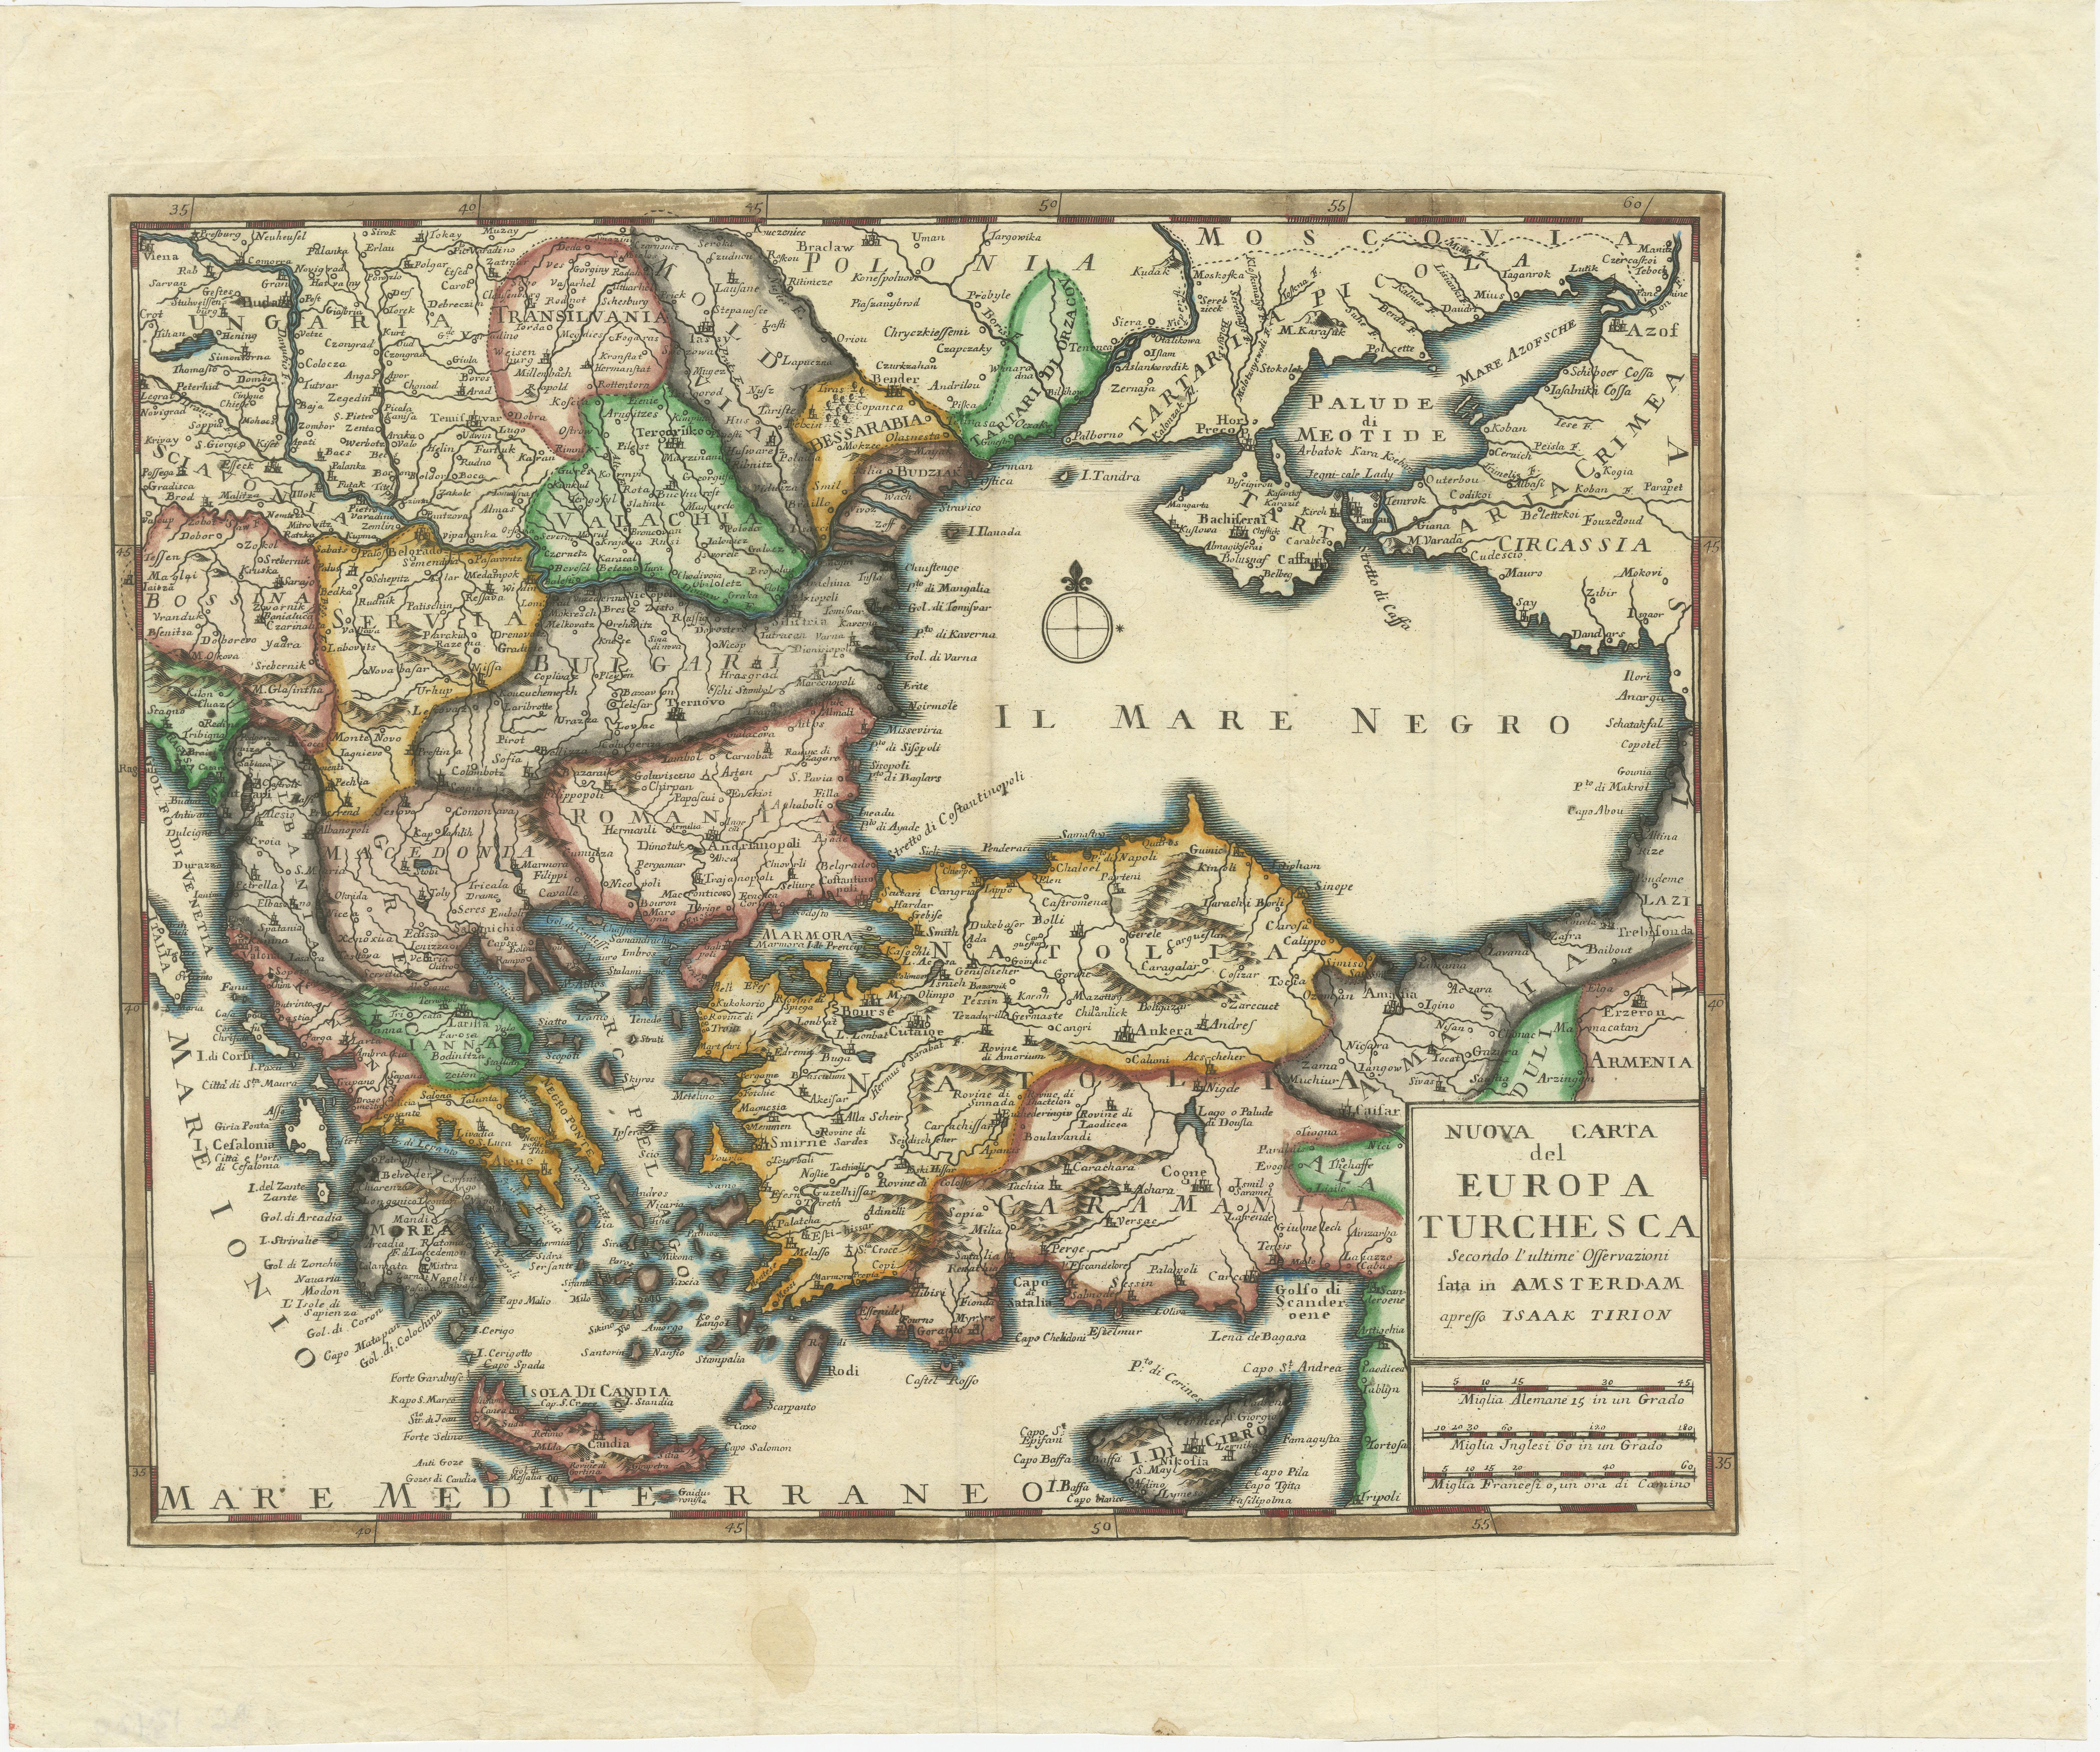 Antike Karte mit dem Titel 'Nuova Carta del Europa Turchesca (..)'. Dies ist eine italienische Version der detaillierten Karte von Tirion über das Schwarze Meer, den Balkan und Kleinasien. Sie ist mit einer einfachen Windrose verziert und bietet